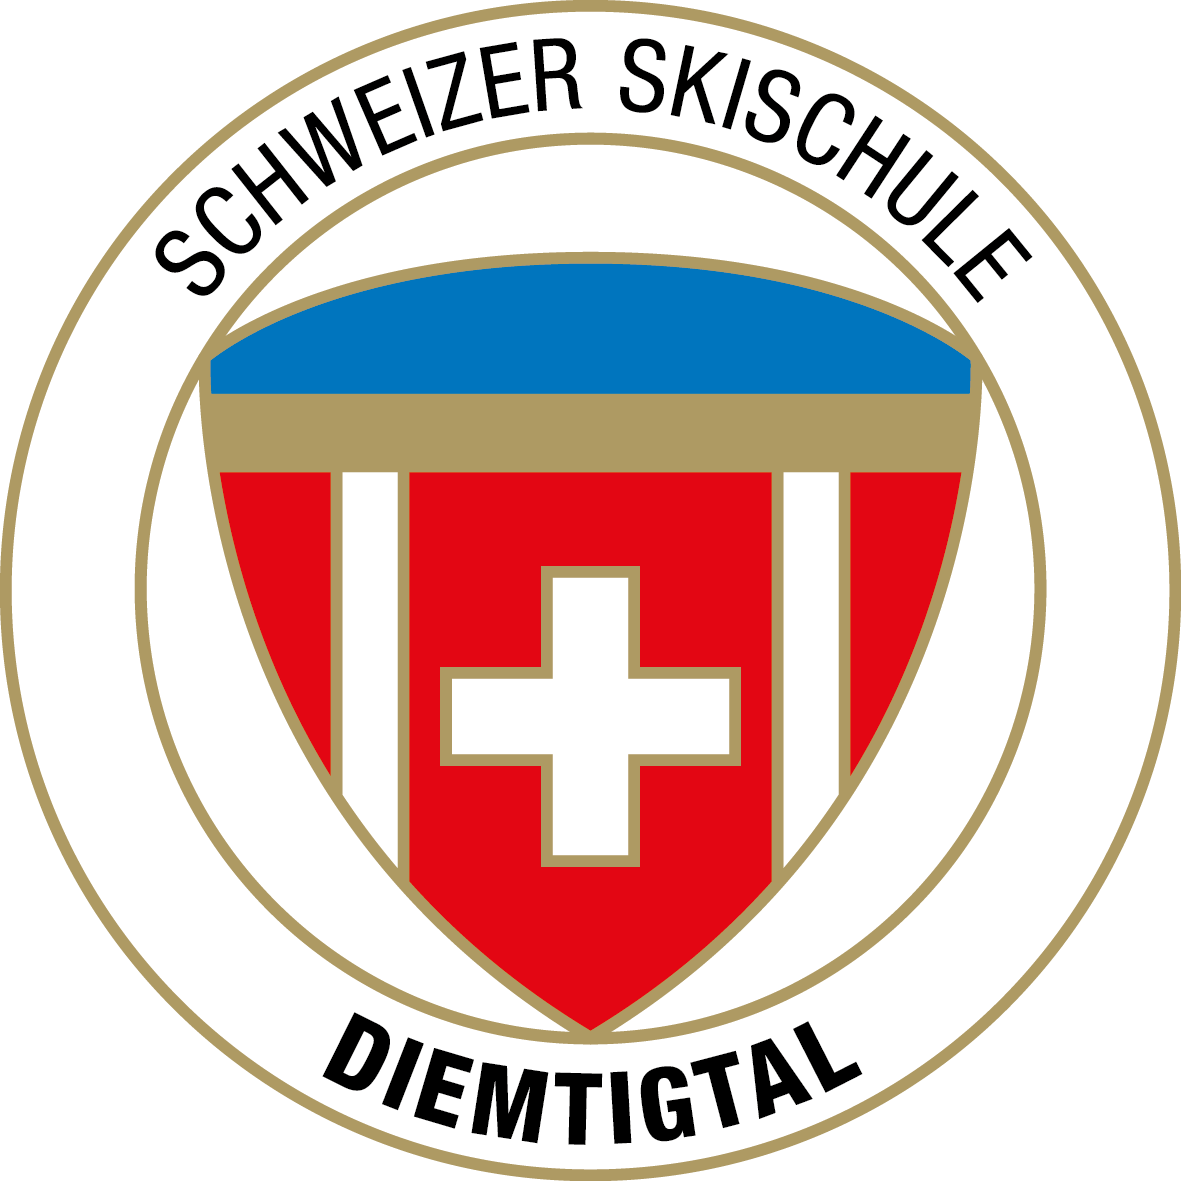 Schweizer Skischule Diemtigtal - Sammelplatz Grimmialp